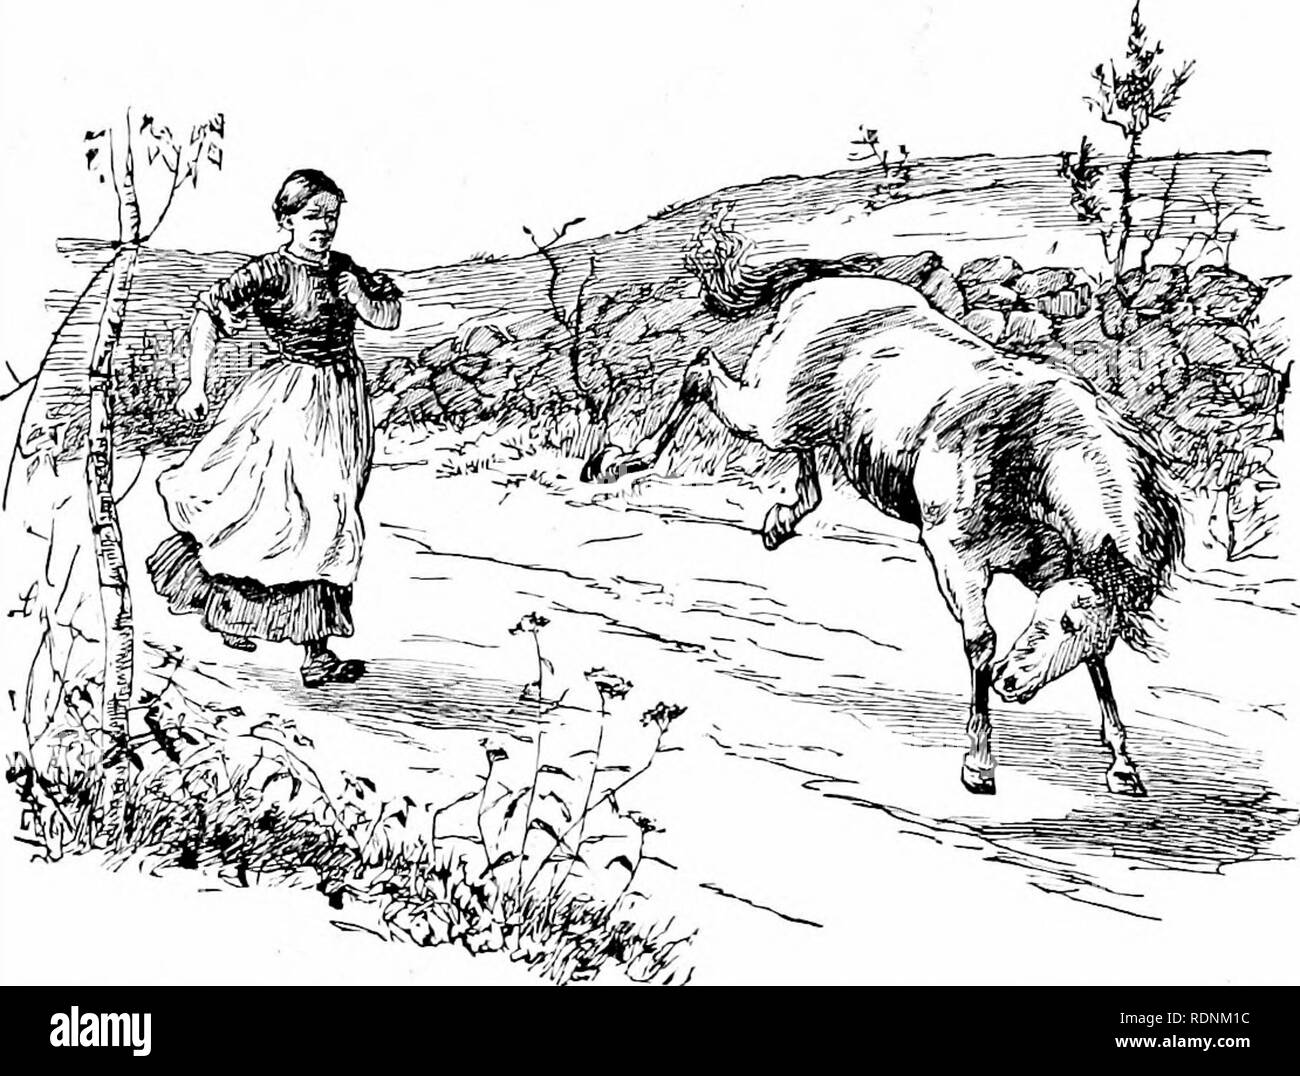 . Quatre pieds, deux pieds, et pas de pieds ; ou, poilu et les animaux domestiques, et comment ils vivent. Le comportement animal. JACK-APPLE'S NEW HAT. 97 entendu leur demander, mais il pensait qu'il avait seulement pris ce qui appartenait à l'cheval. Elle attend de lui un peu comme Apple-Jack's net. Au cours de la journée, le cheval a été mangent de l'herbe dans la cour. Bridget, looMng hors de la fenêtre, a vu quelque chose sur sa tête qu'elle imaginait ressemblait à son torchon nouvelles. Elle regarda de nouveau. C'était très étrange. Puis elle alla à la porte pour voir plus clair. Oui, là c'Avas sur l'ancienne tête de cheval, - ses beaux, torchon qu'elle a été seulement Banque D'Images